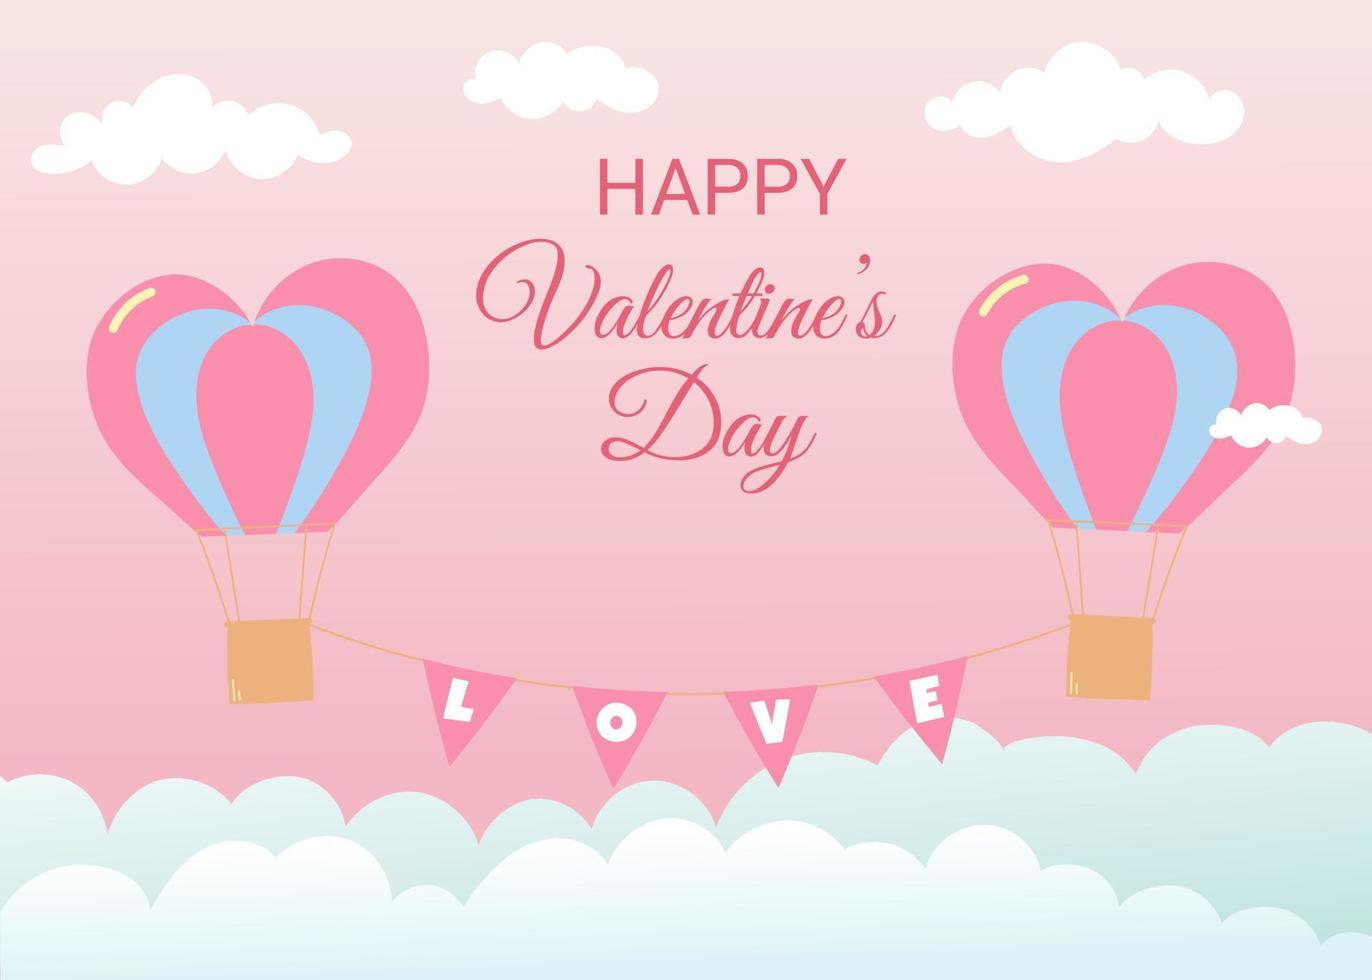 alla hjärtans dag gratulationskort. luftballonger i hjärtform flyger i himlen. rosa bakgrund med vita och blå moln vektor